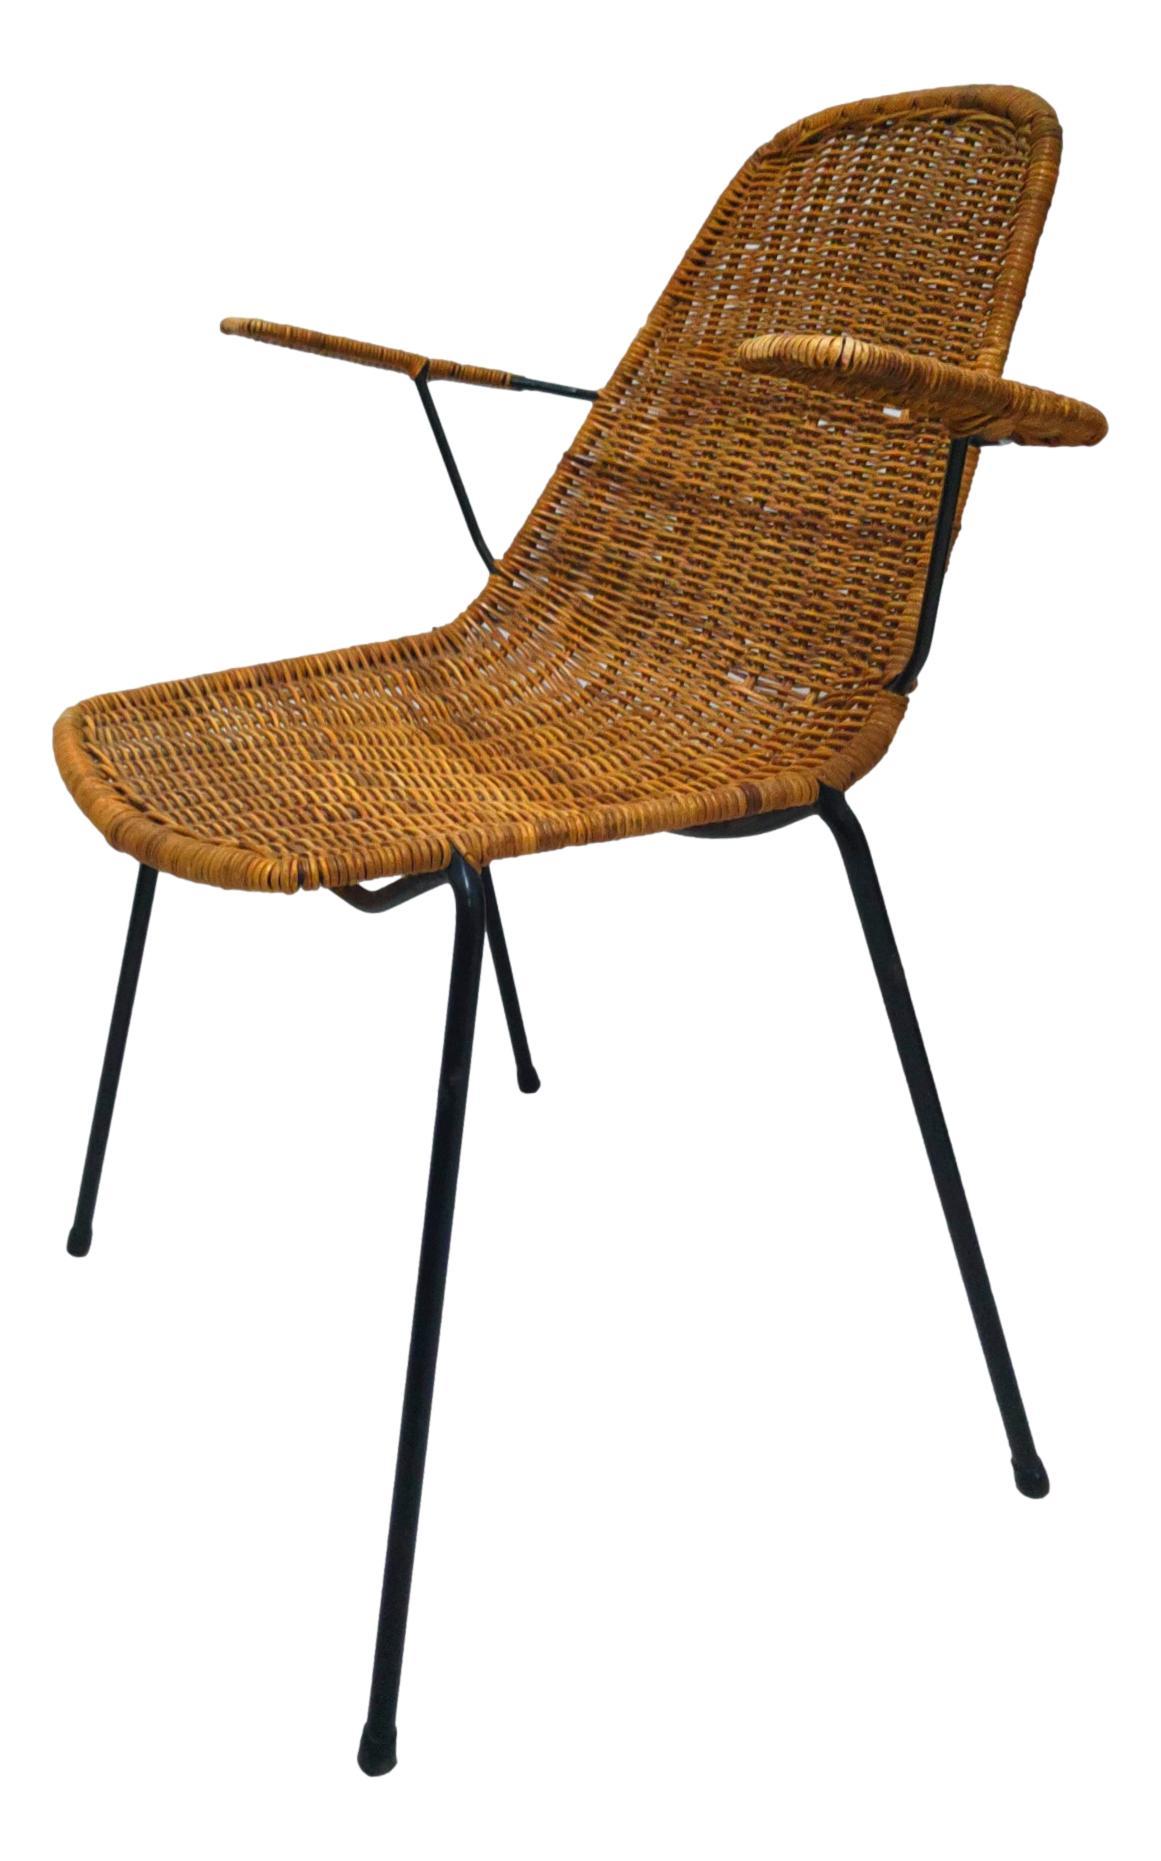 Italian basket chair in wicker 1950s design franco campo & carlo graffi